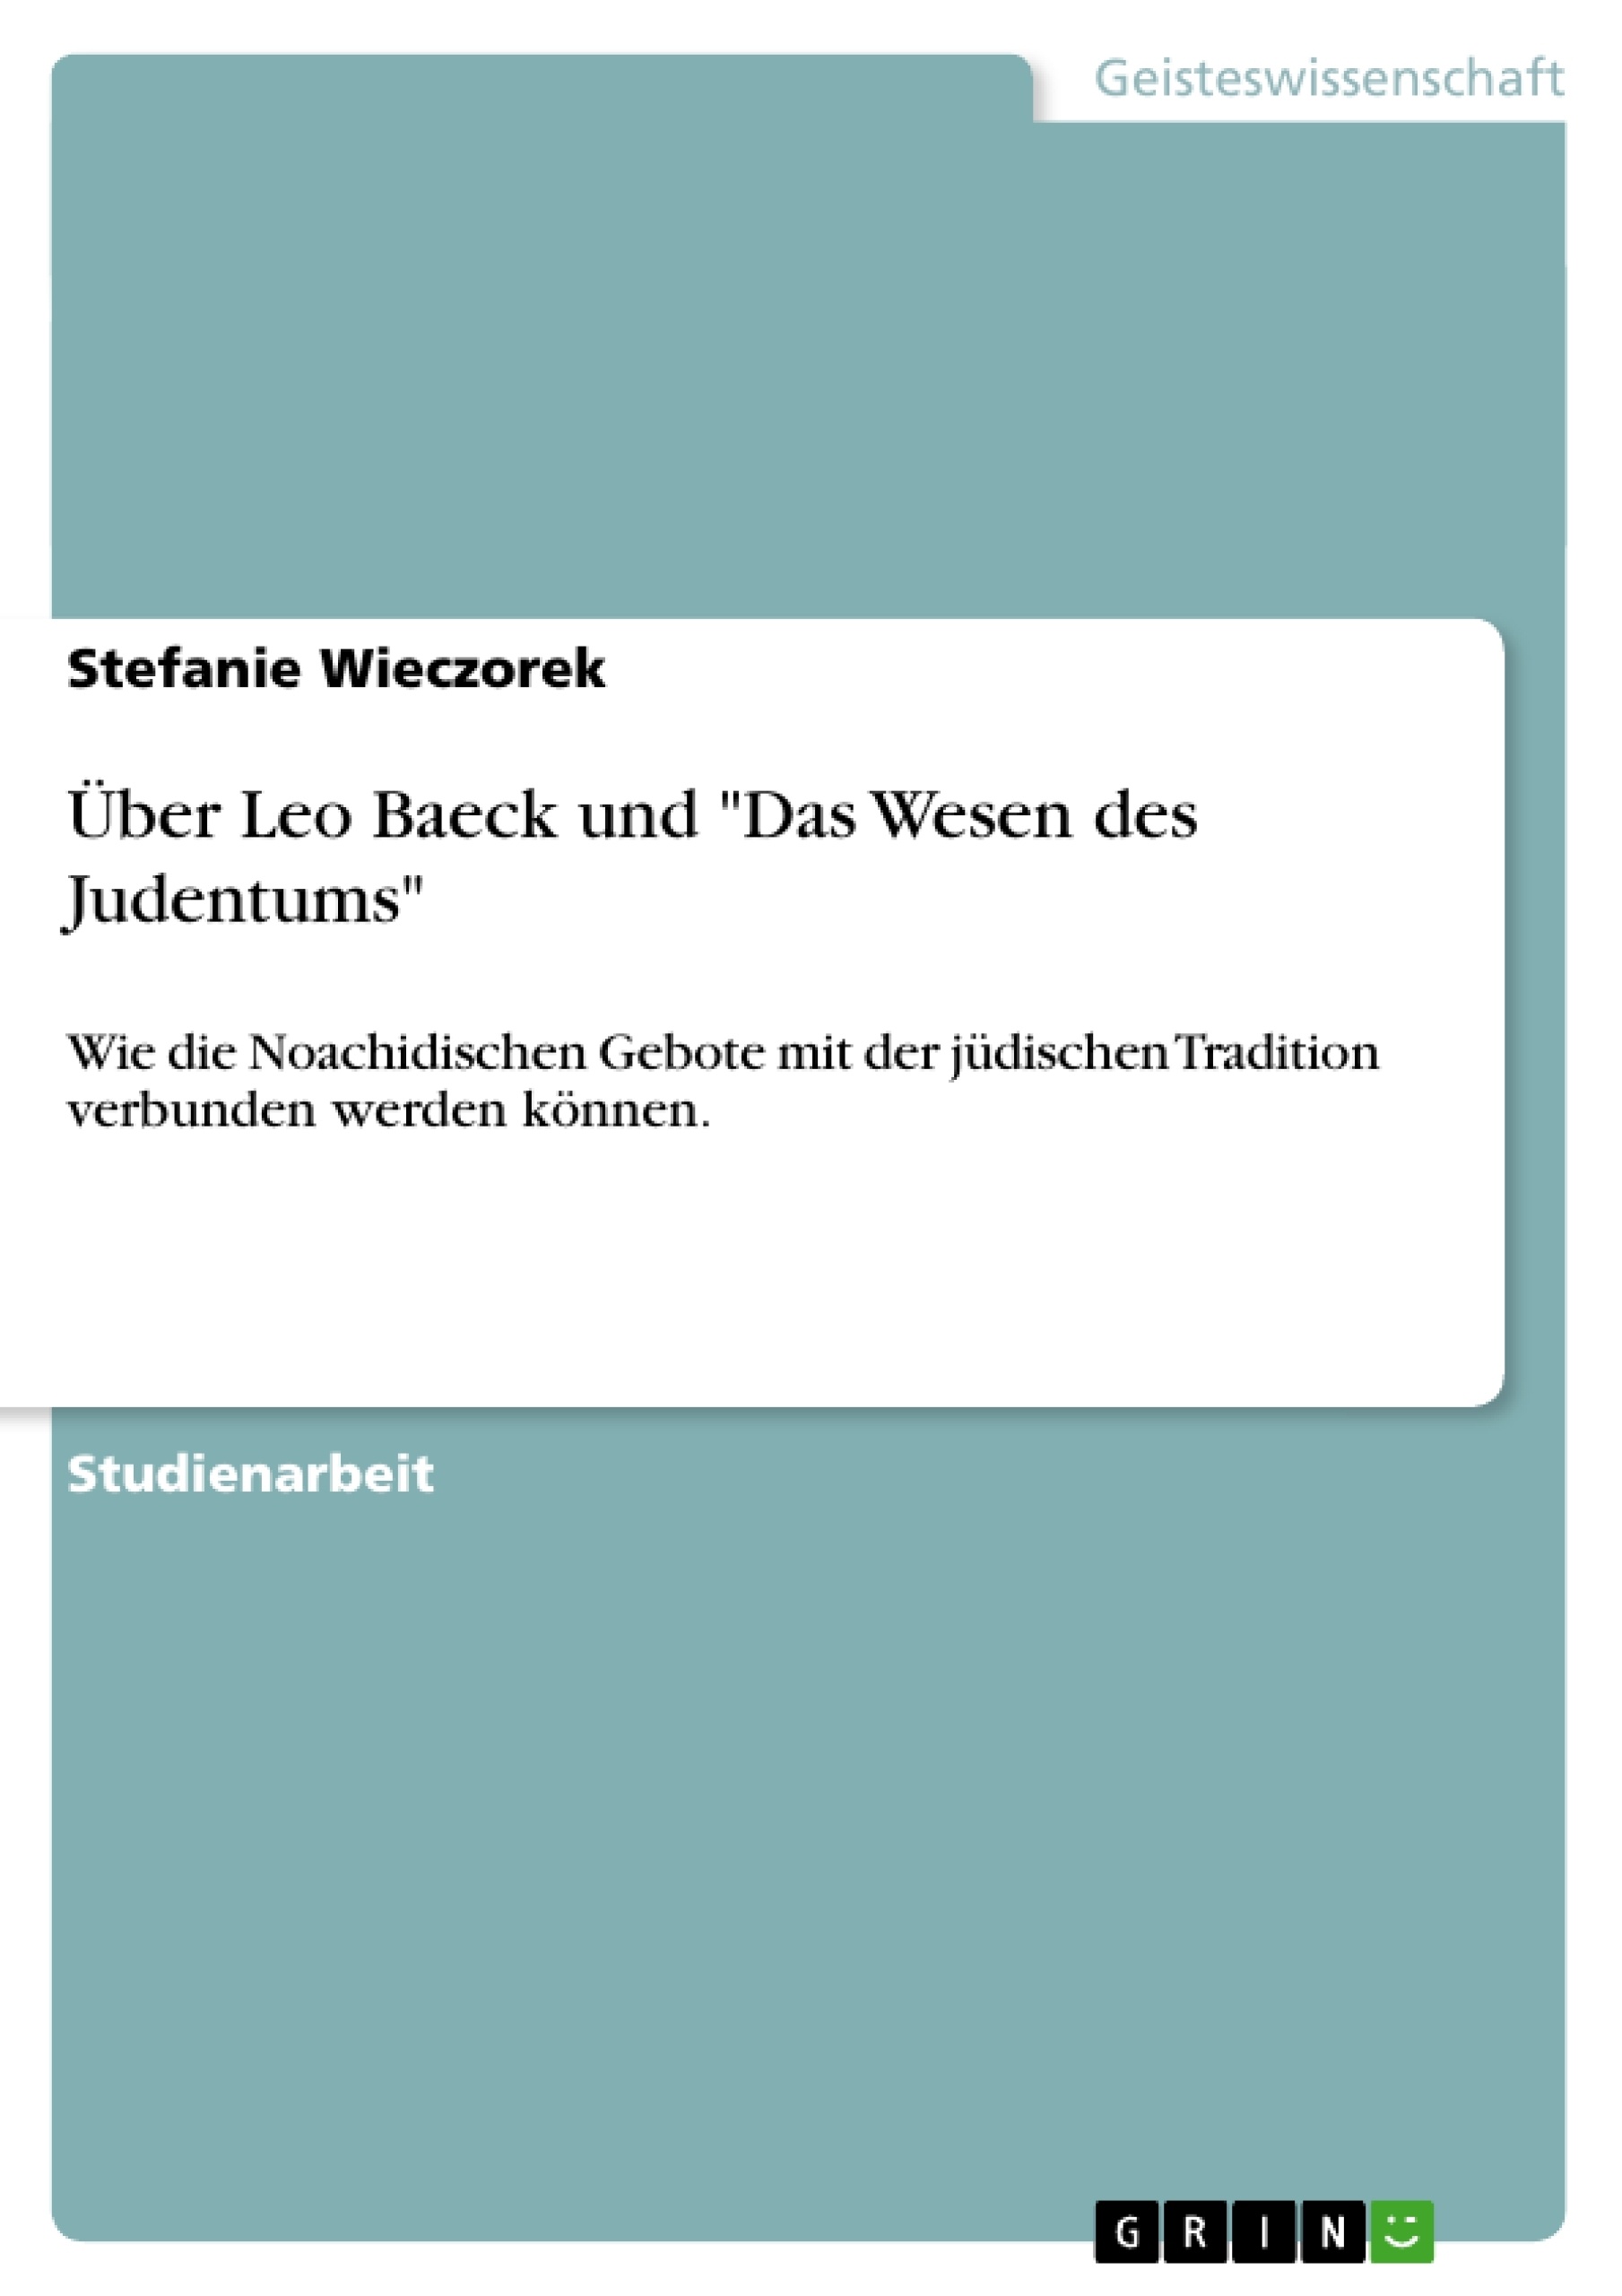 Titre: Über Leo Baeck und "Das Wesen des Judentums"